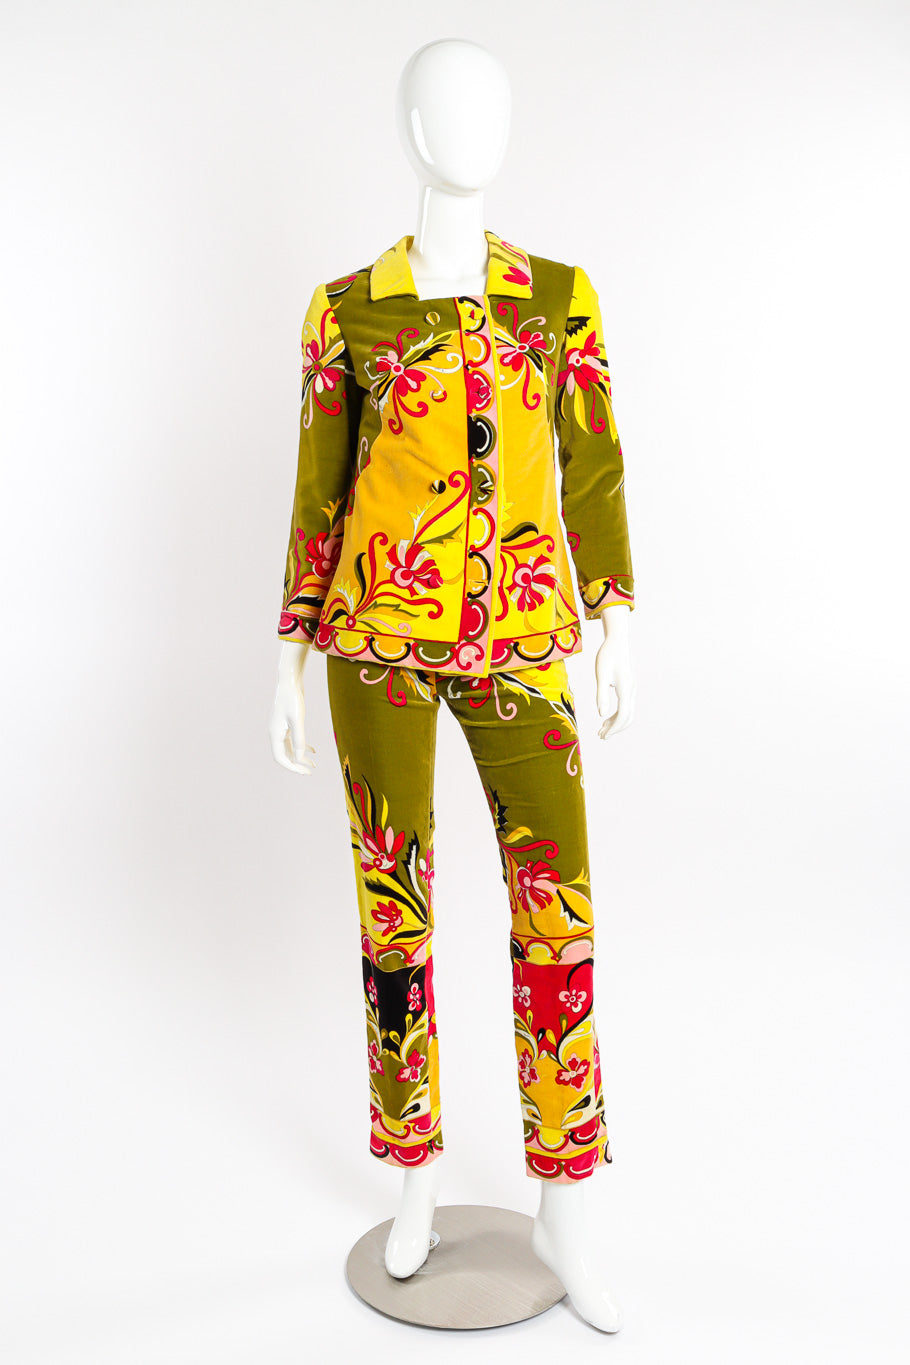 Mod floral pantsuit by Emilio Pucci on mannequin @recessla